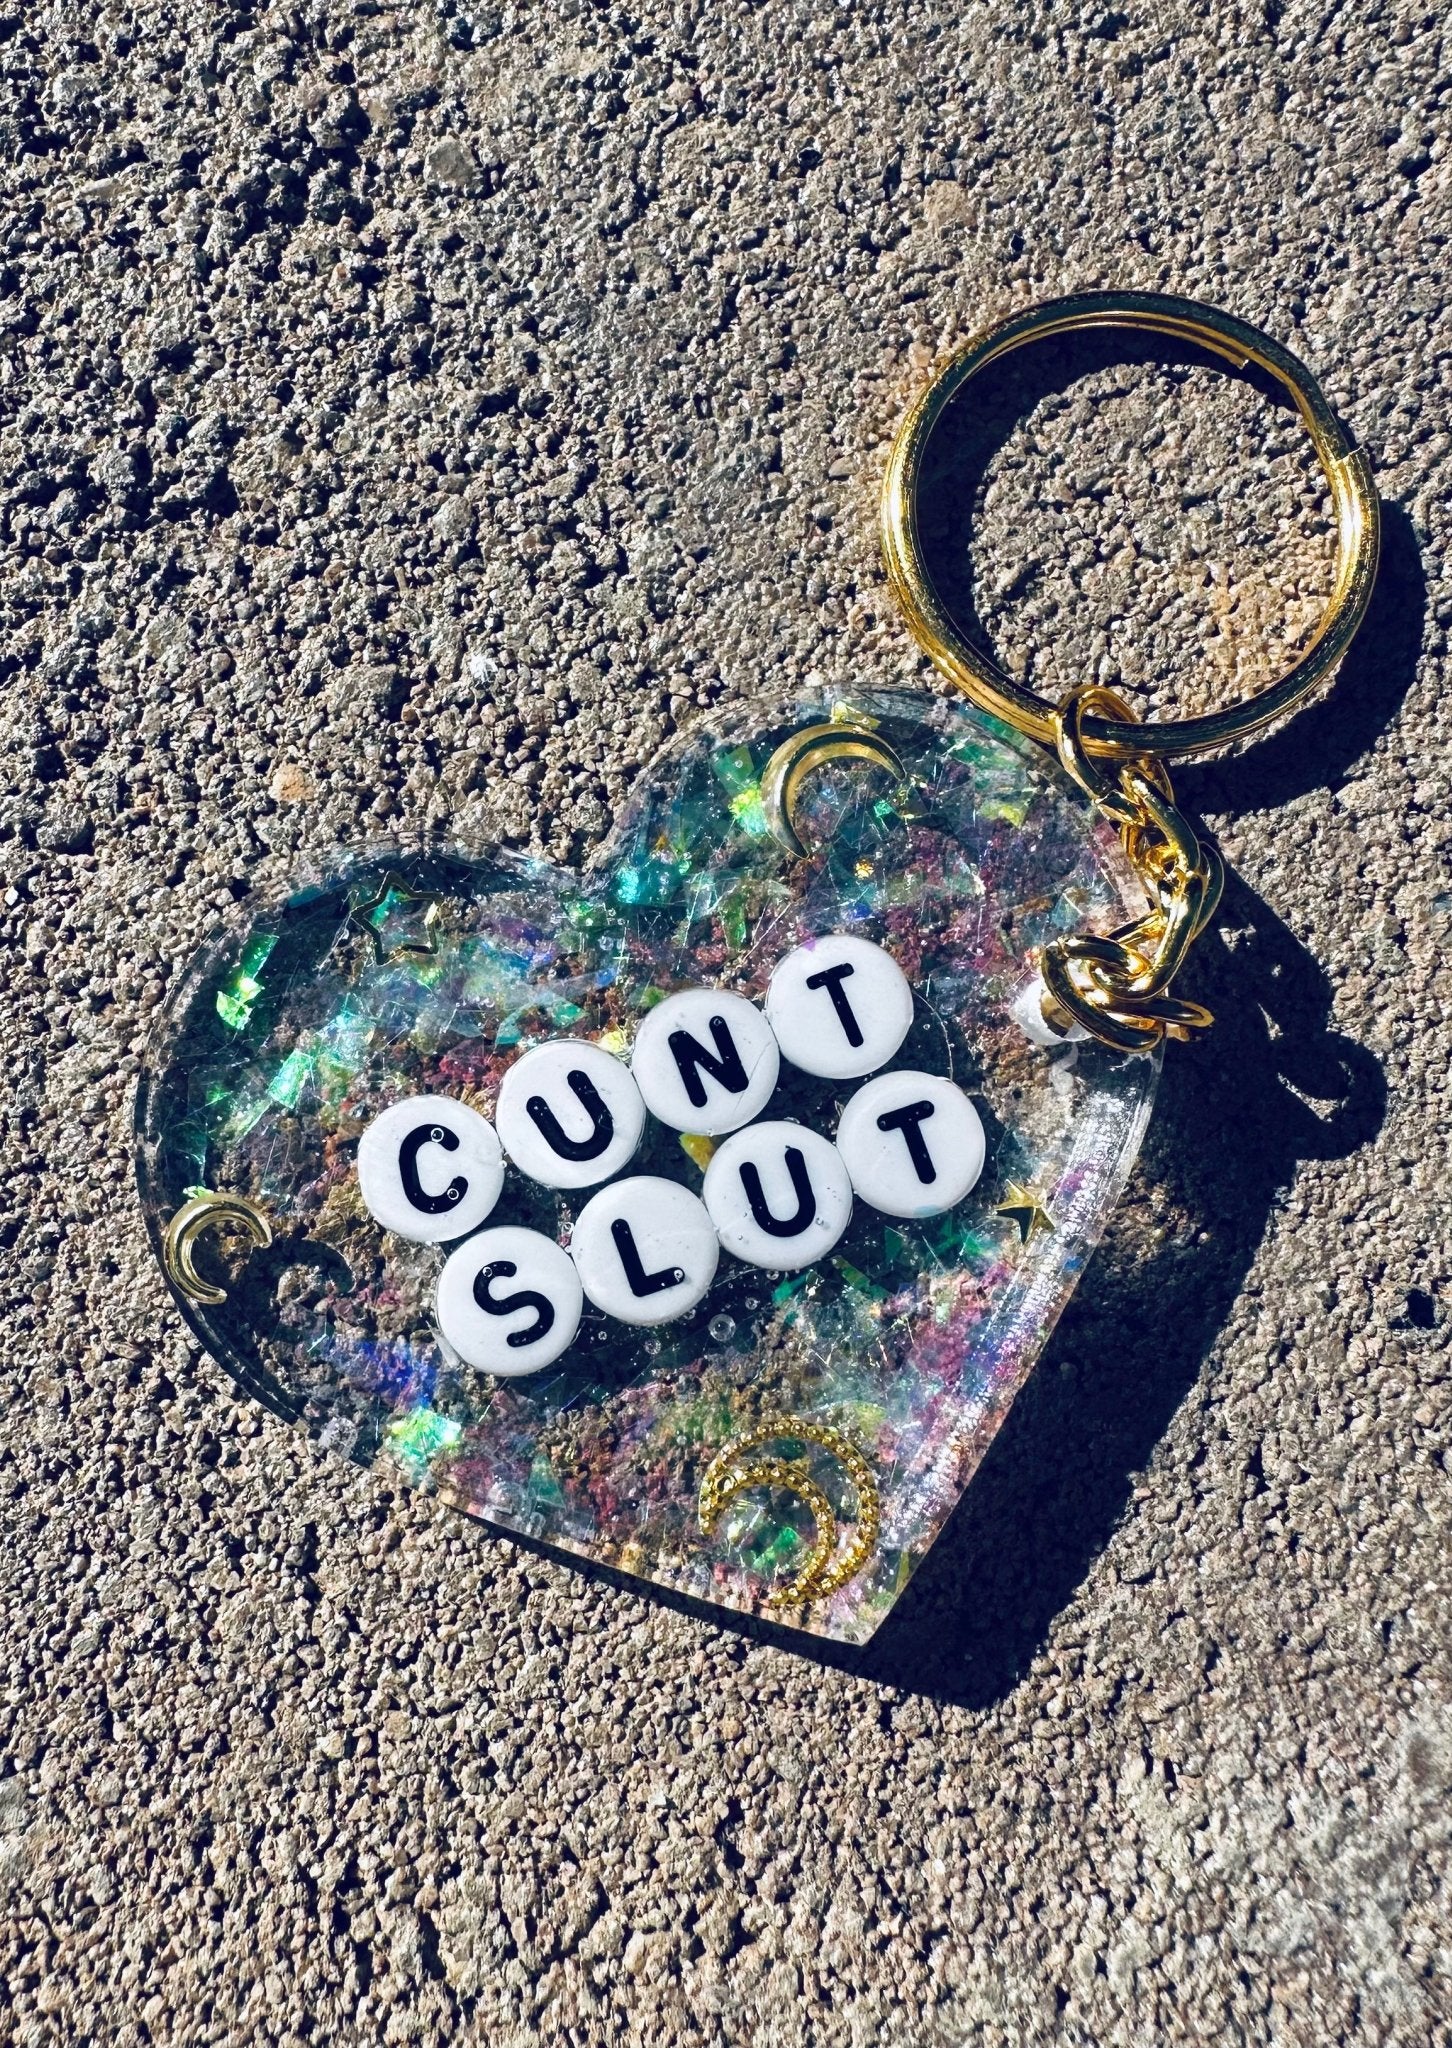 Cunt Slut Glitter Moon Keychain - UntamedEgo LLC.